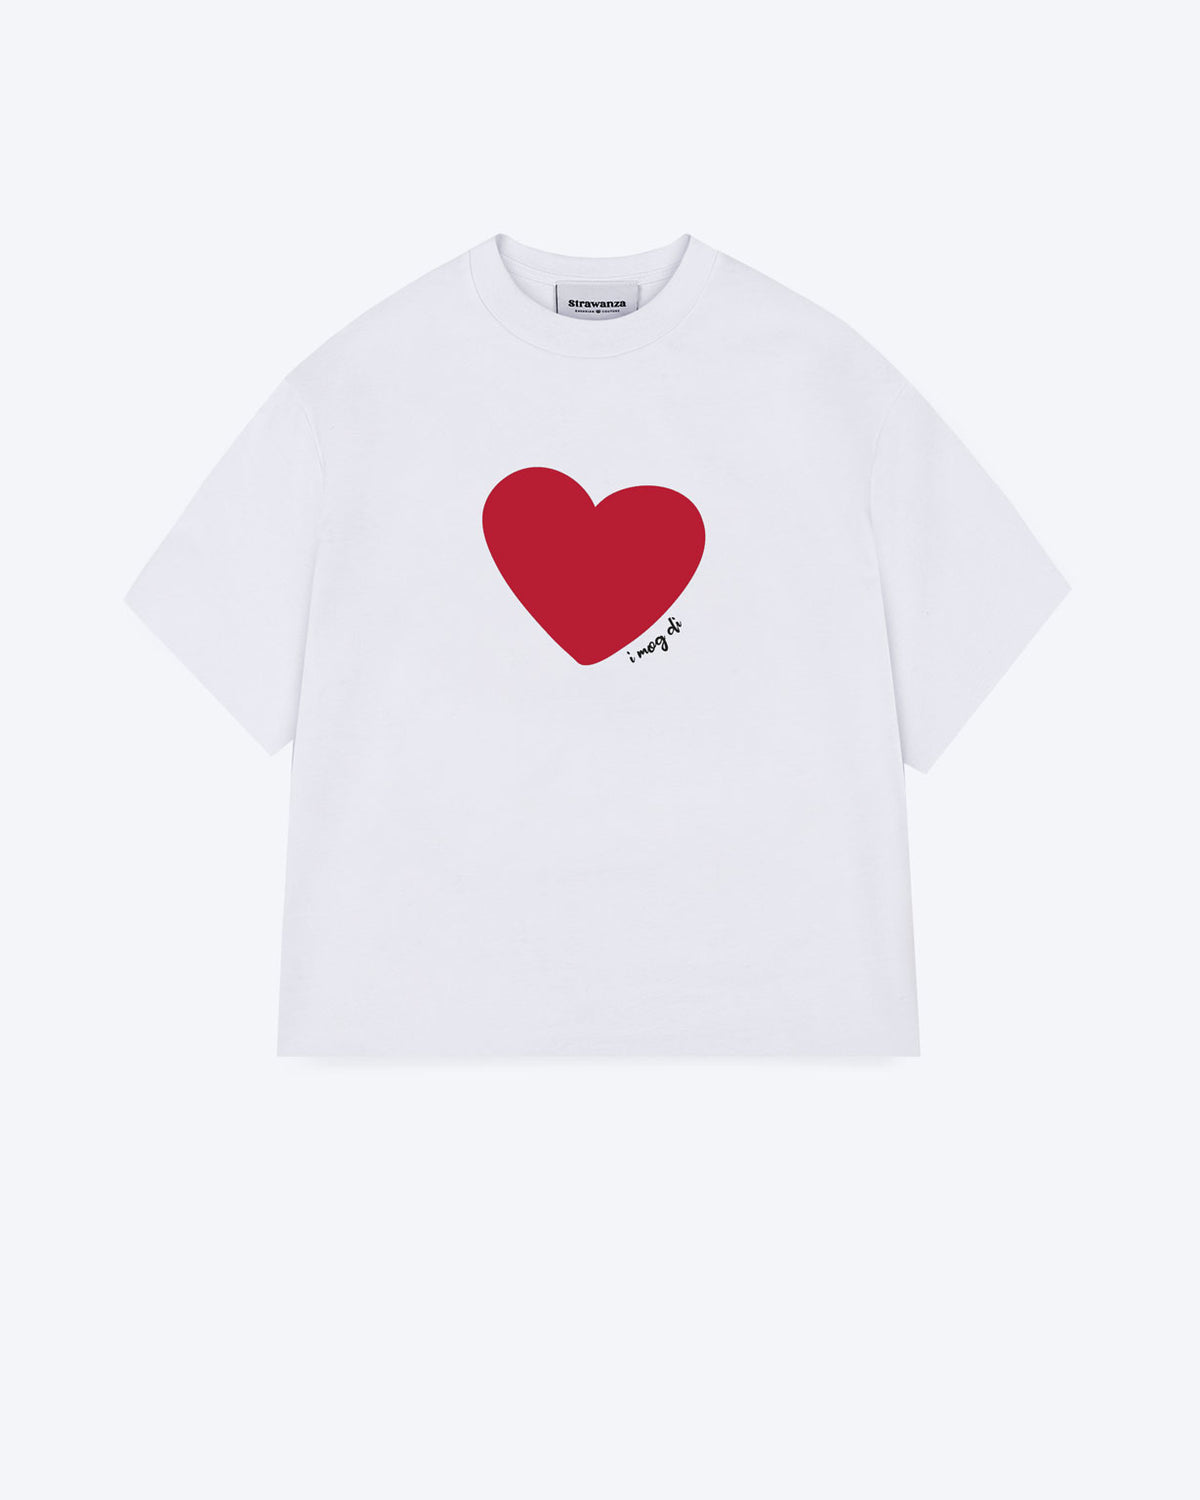 Ein weißes T-Shirt mit einem großen, roten herz auf der Brust wo rechts an der Seite von dem Herz "I mog di" steht.